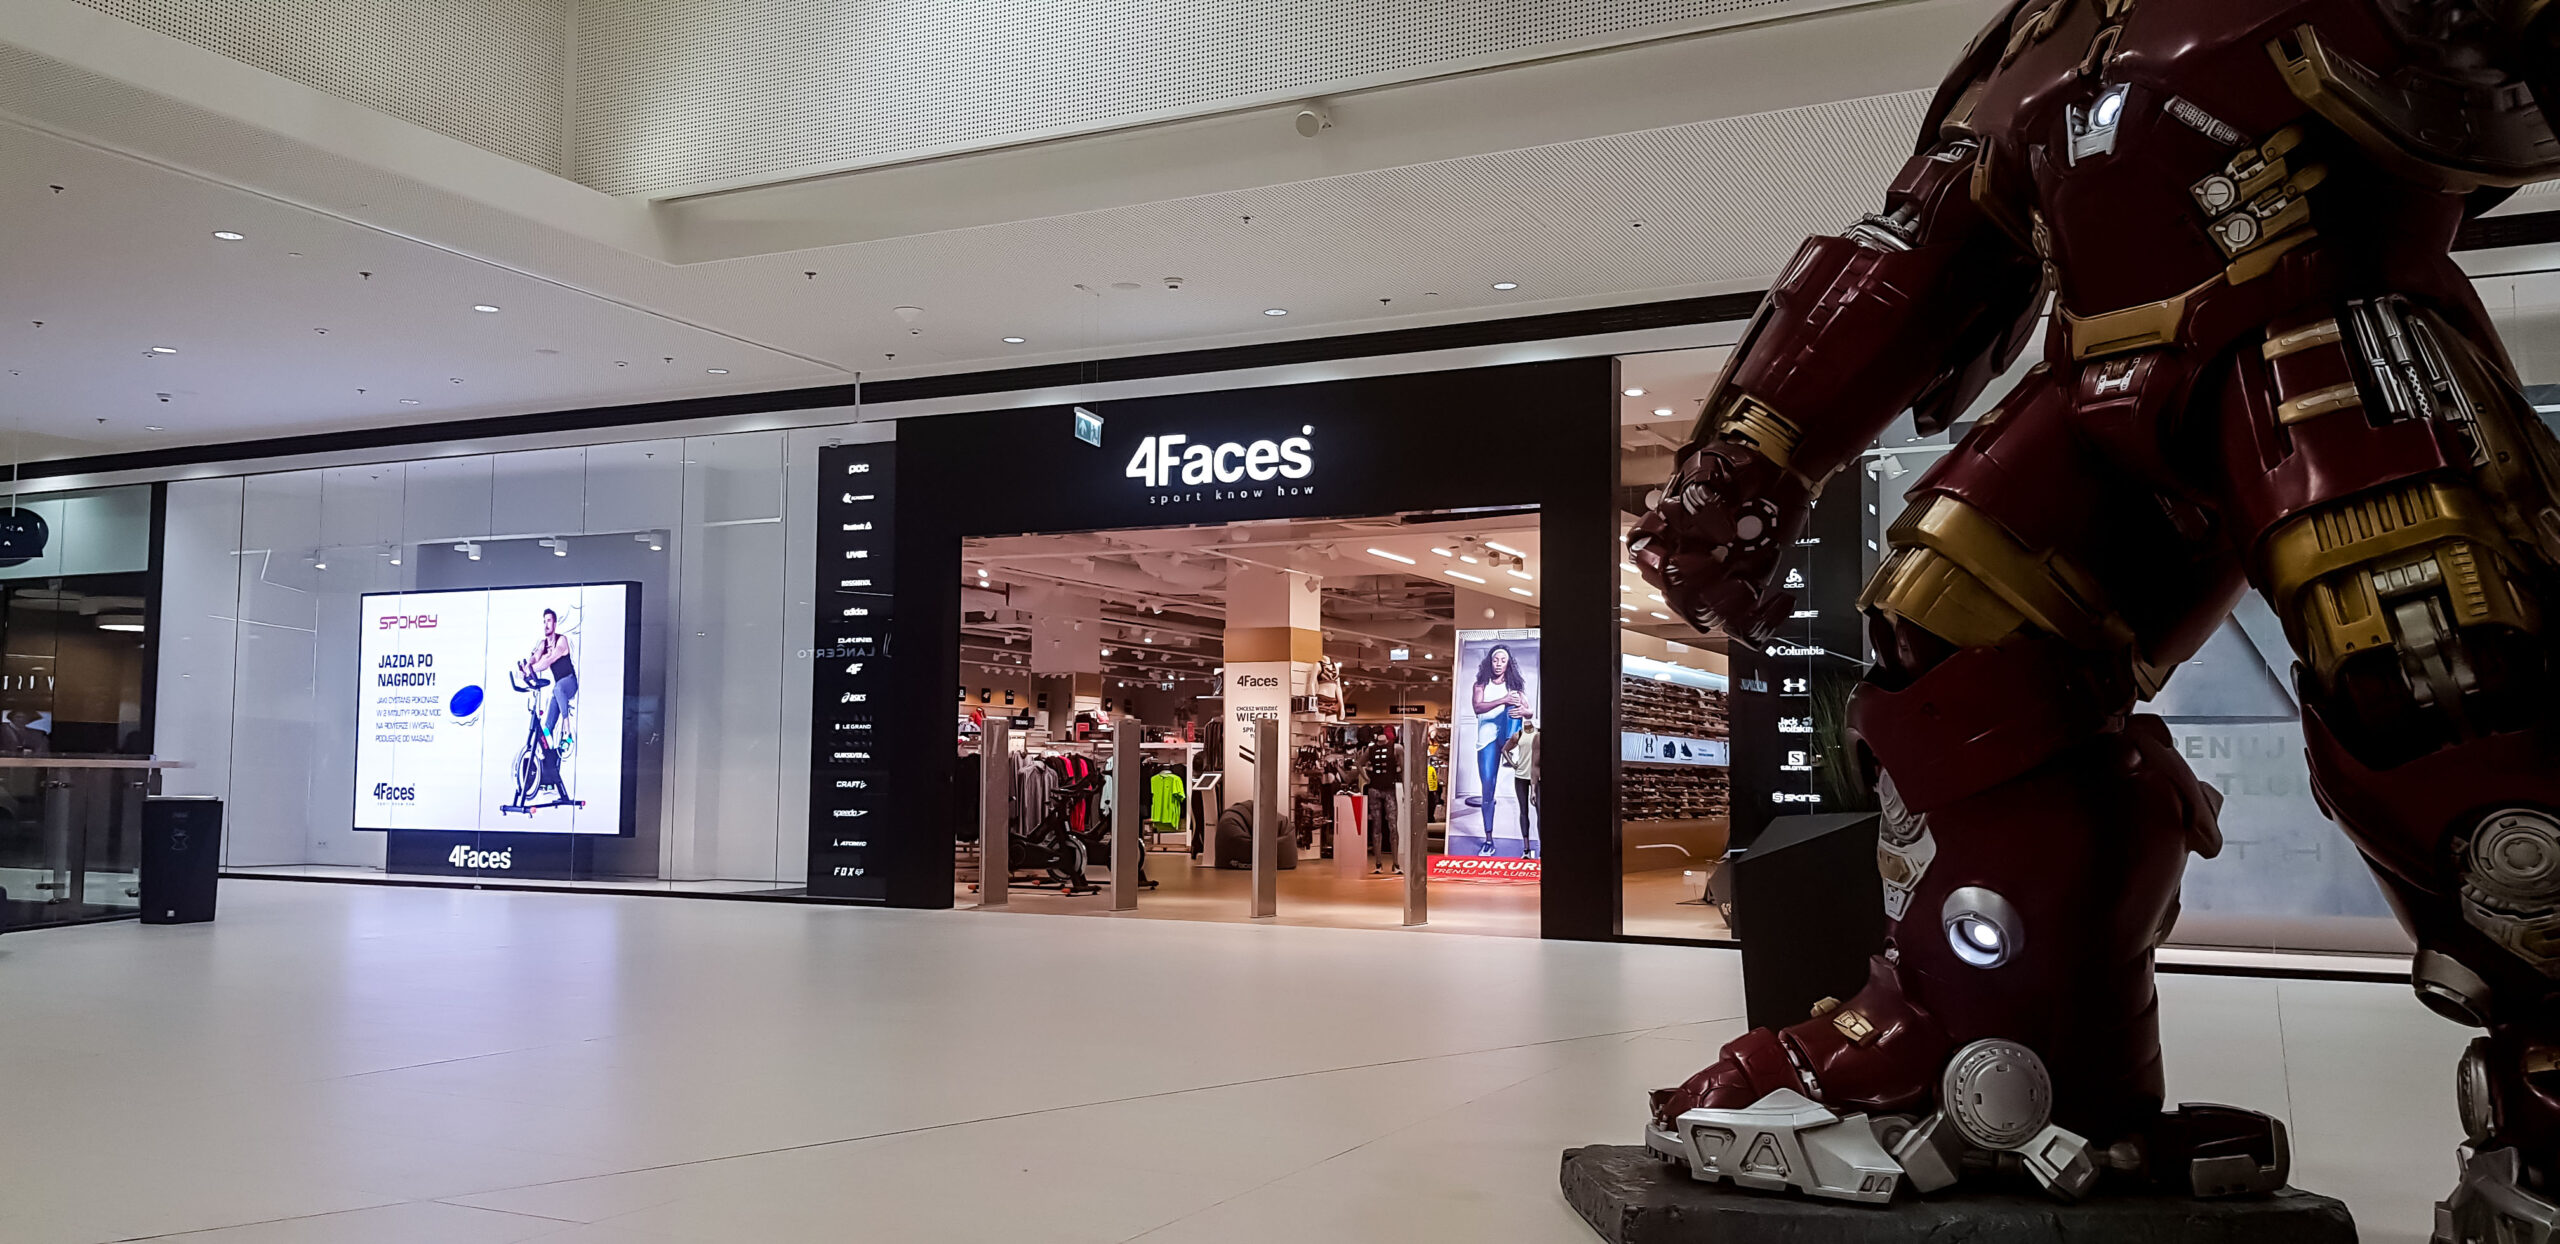 Ekran LED w wityrnie sklepi 4Faces w Warszawie